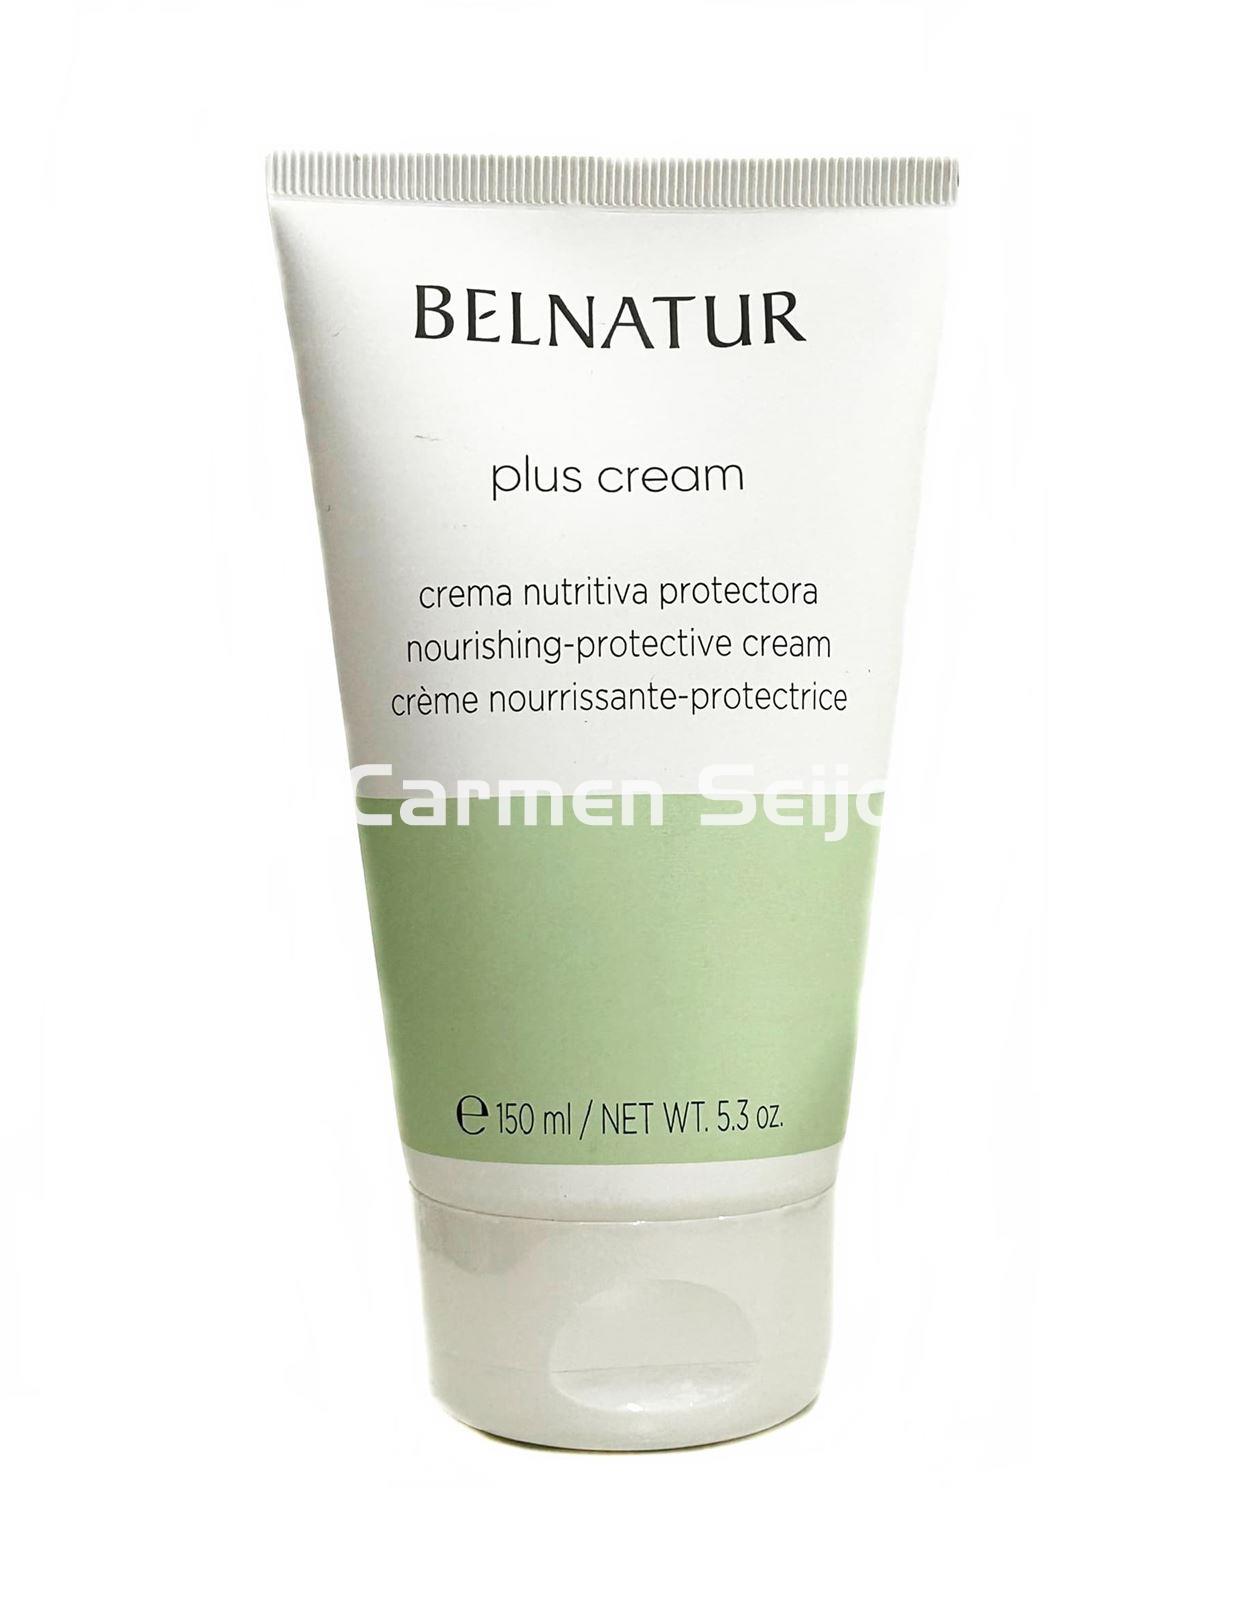 Belnatur Crema Regeneradora y Nutritiva Plus Cream - Imagen 2